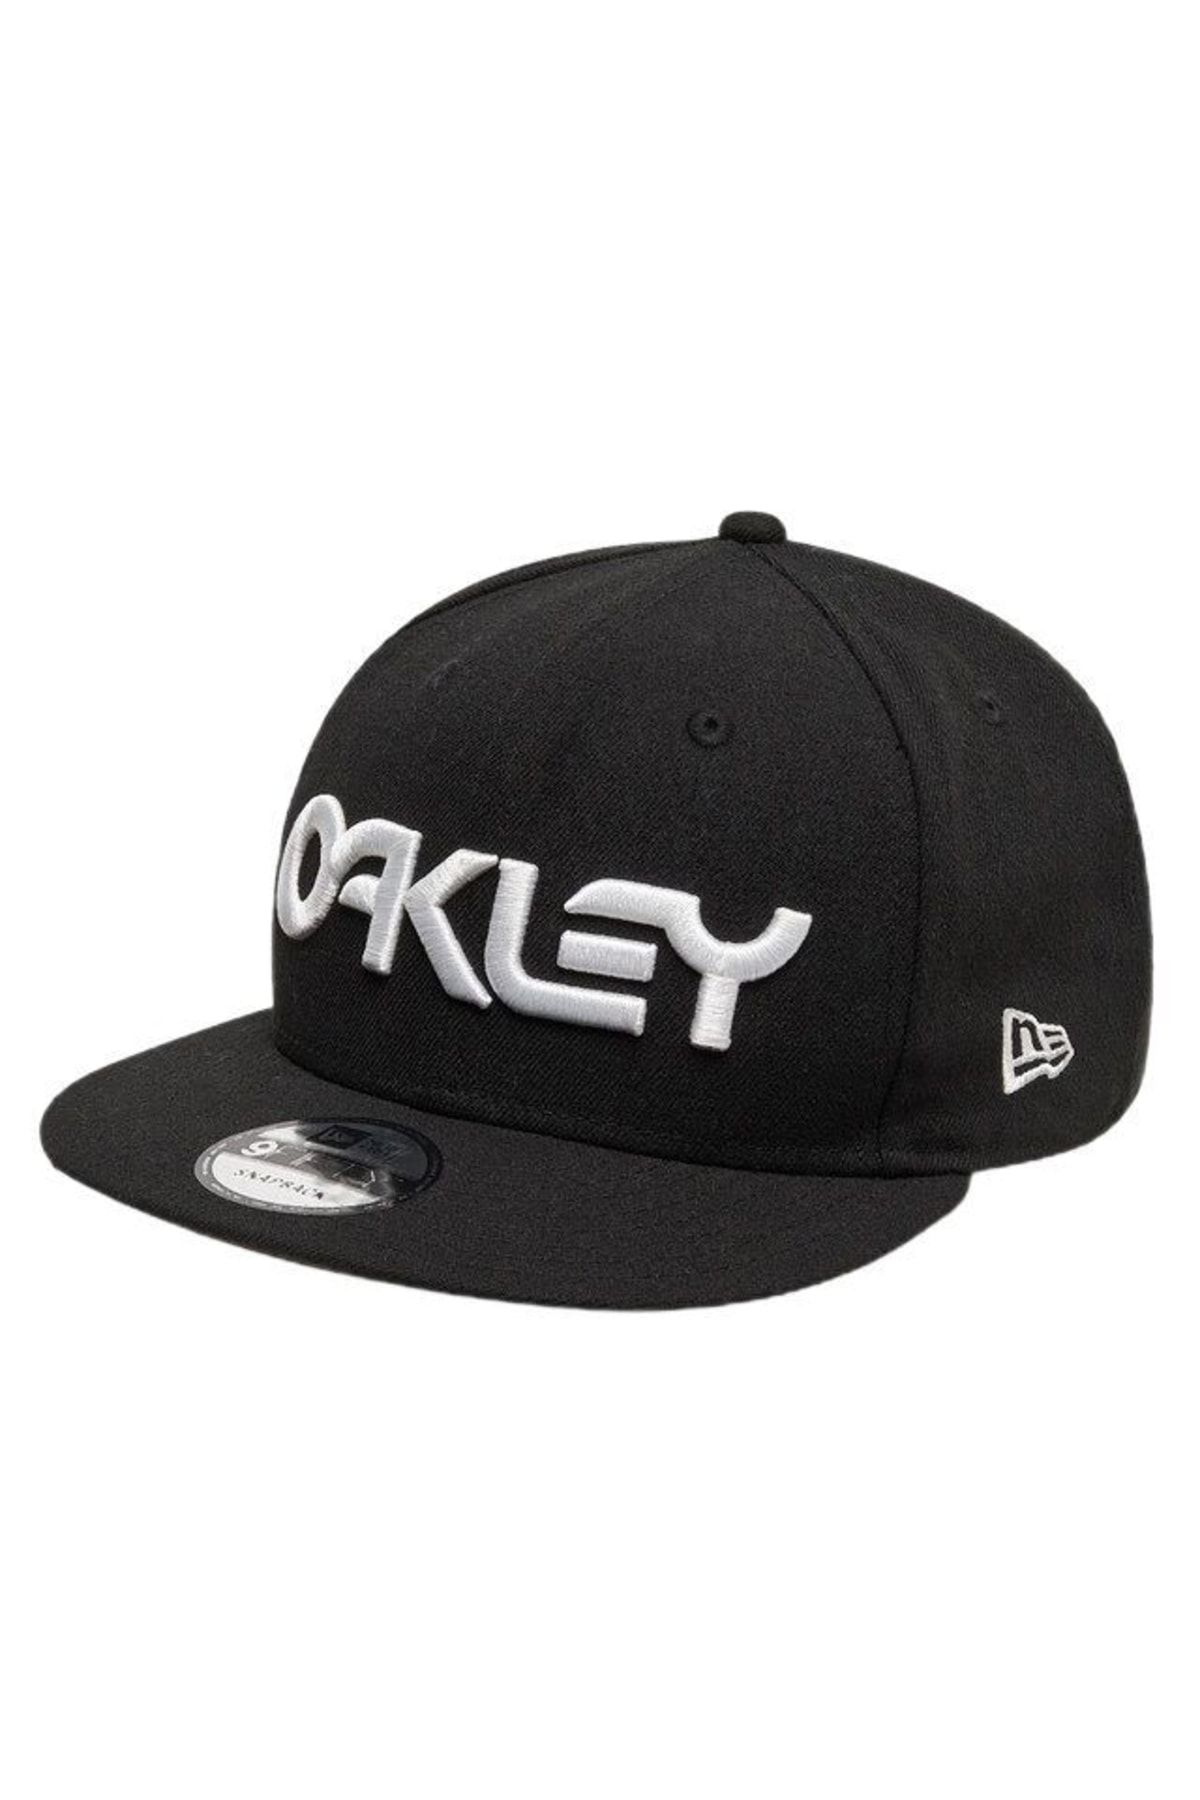 Oakley Mark Iı Novelty Snap Back Blackout Erkek Outdoor Şapka